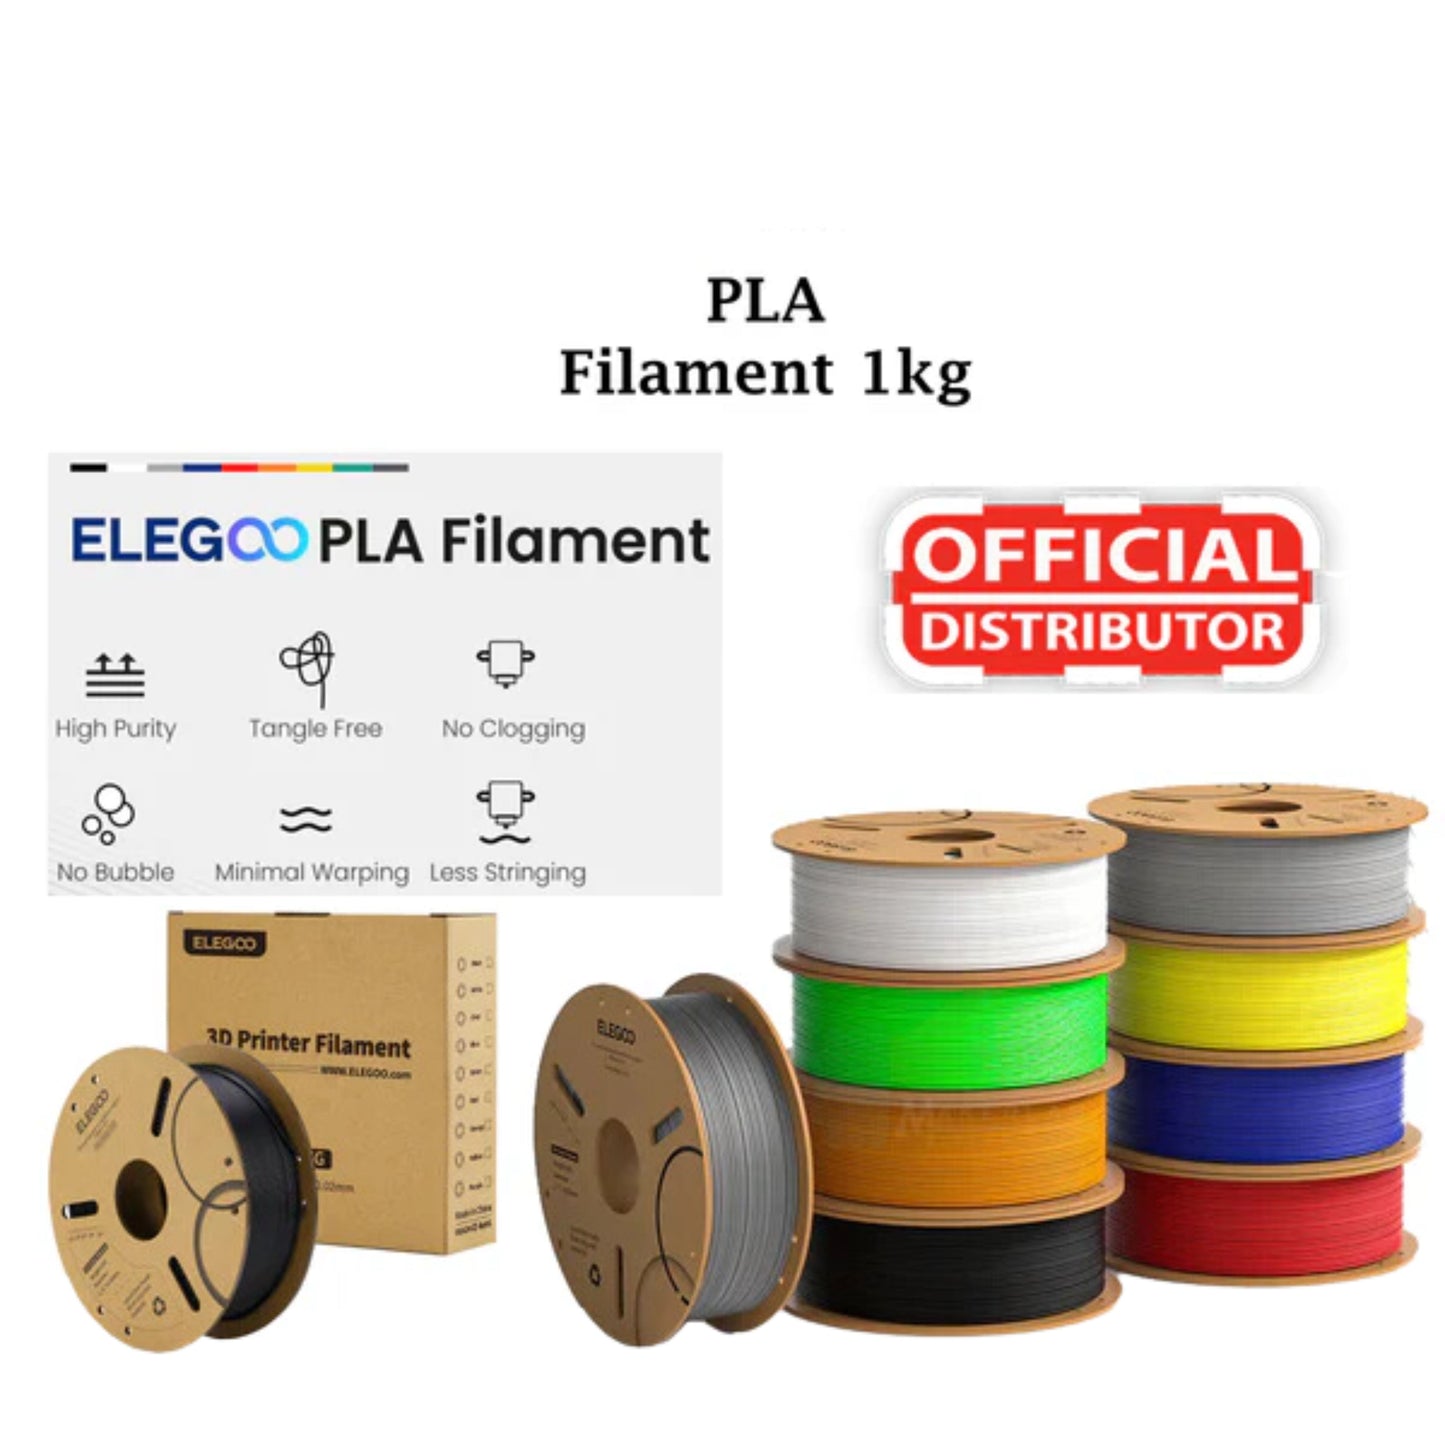 Elegoo PLA Filaments 1.75mm 1KG